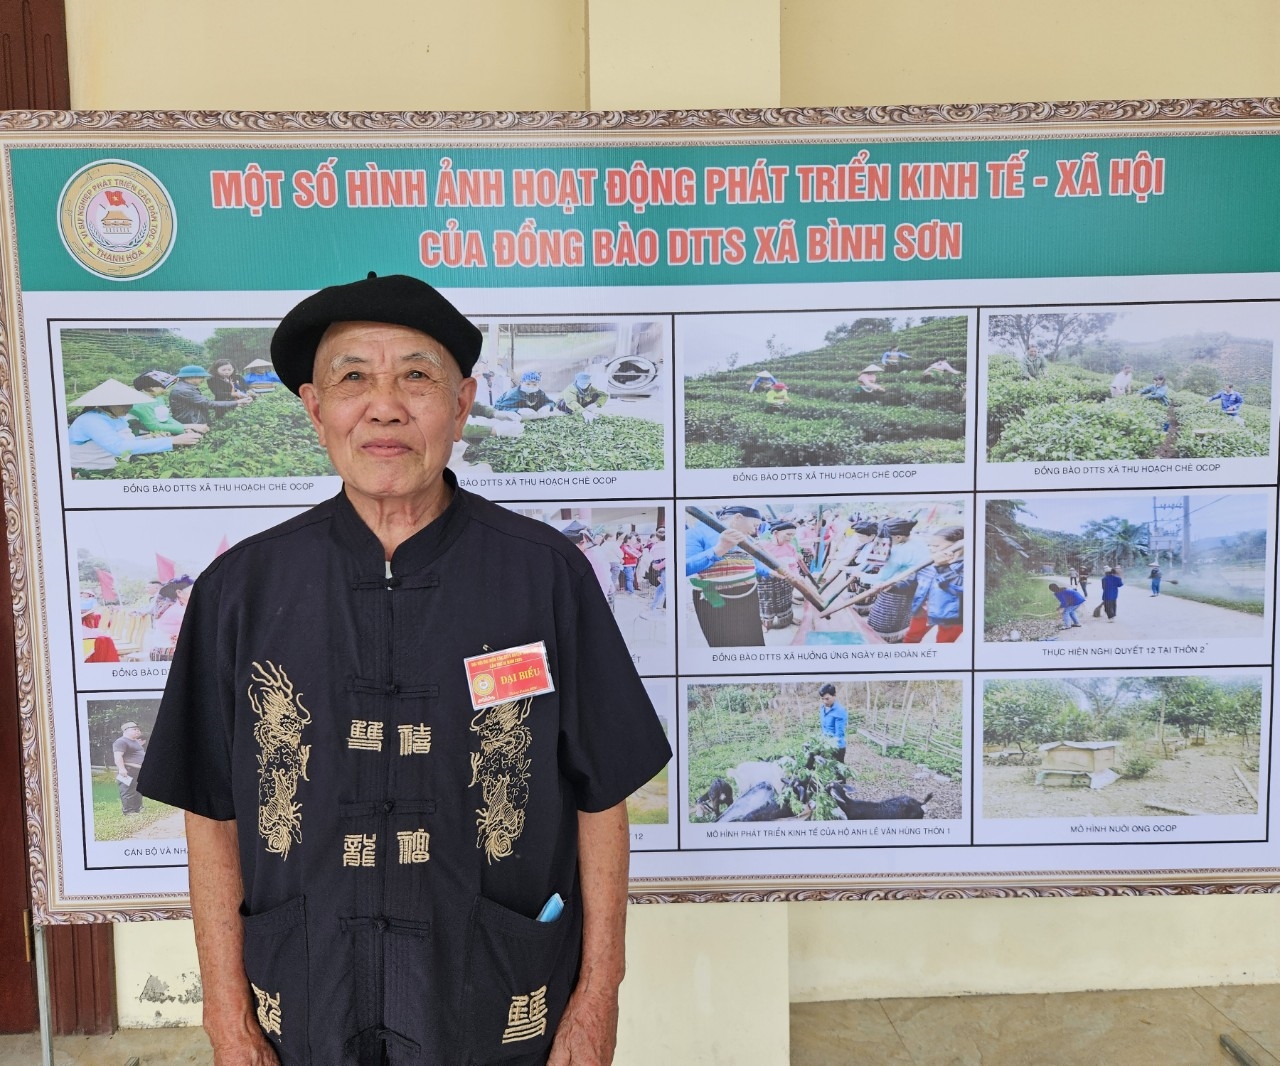 Ông Lò Văn Thuân, Người có uy tín thôn Bồn Dồn, xã Bình Sơn huyện Triệu Sơn có nhiều đóng góp trong phát triển kinh tế - xã hội tại địa phương, đặc biệt là phong trào xây dựng NTM